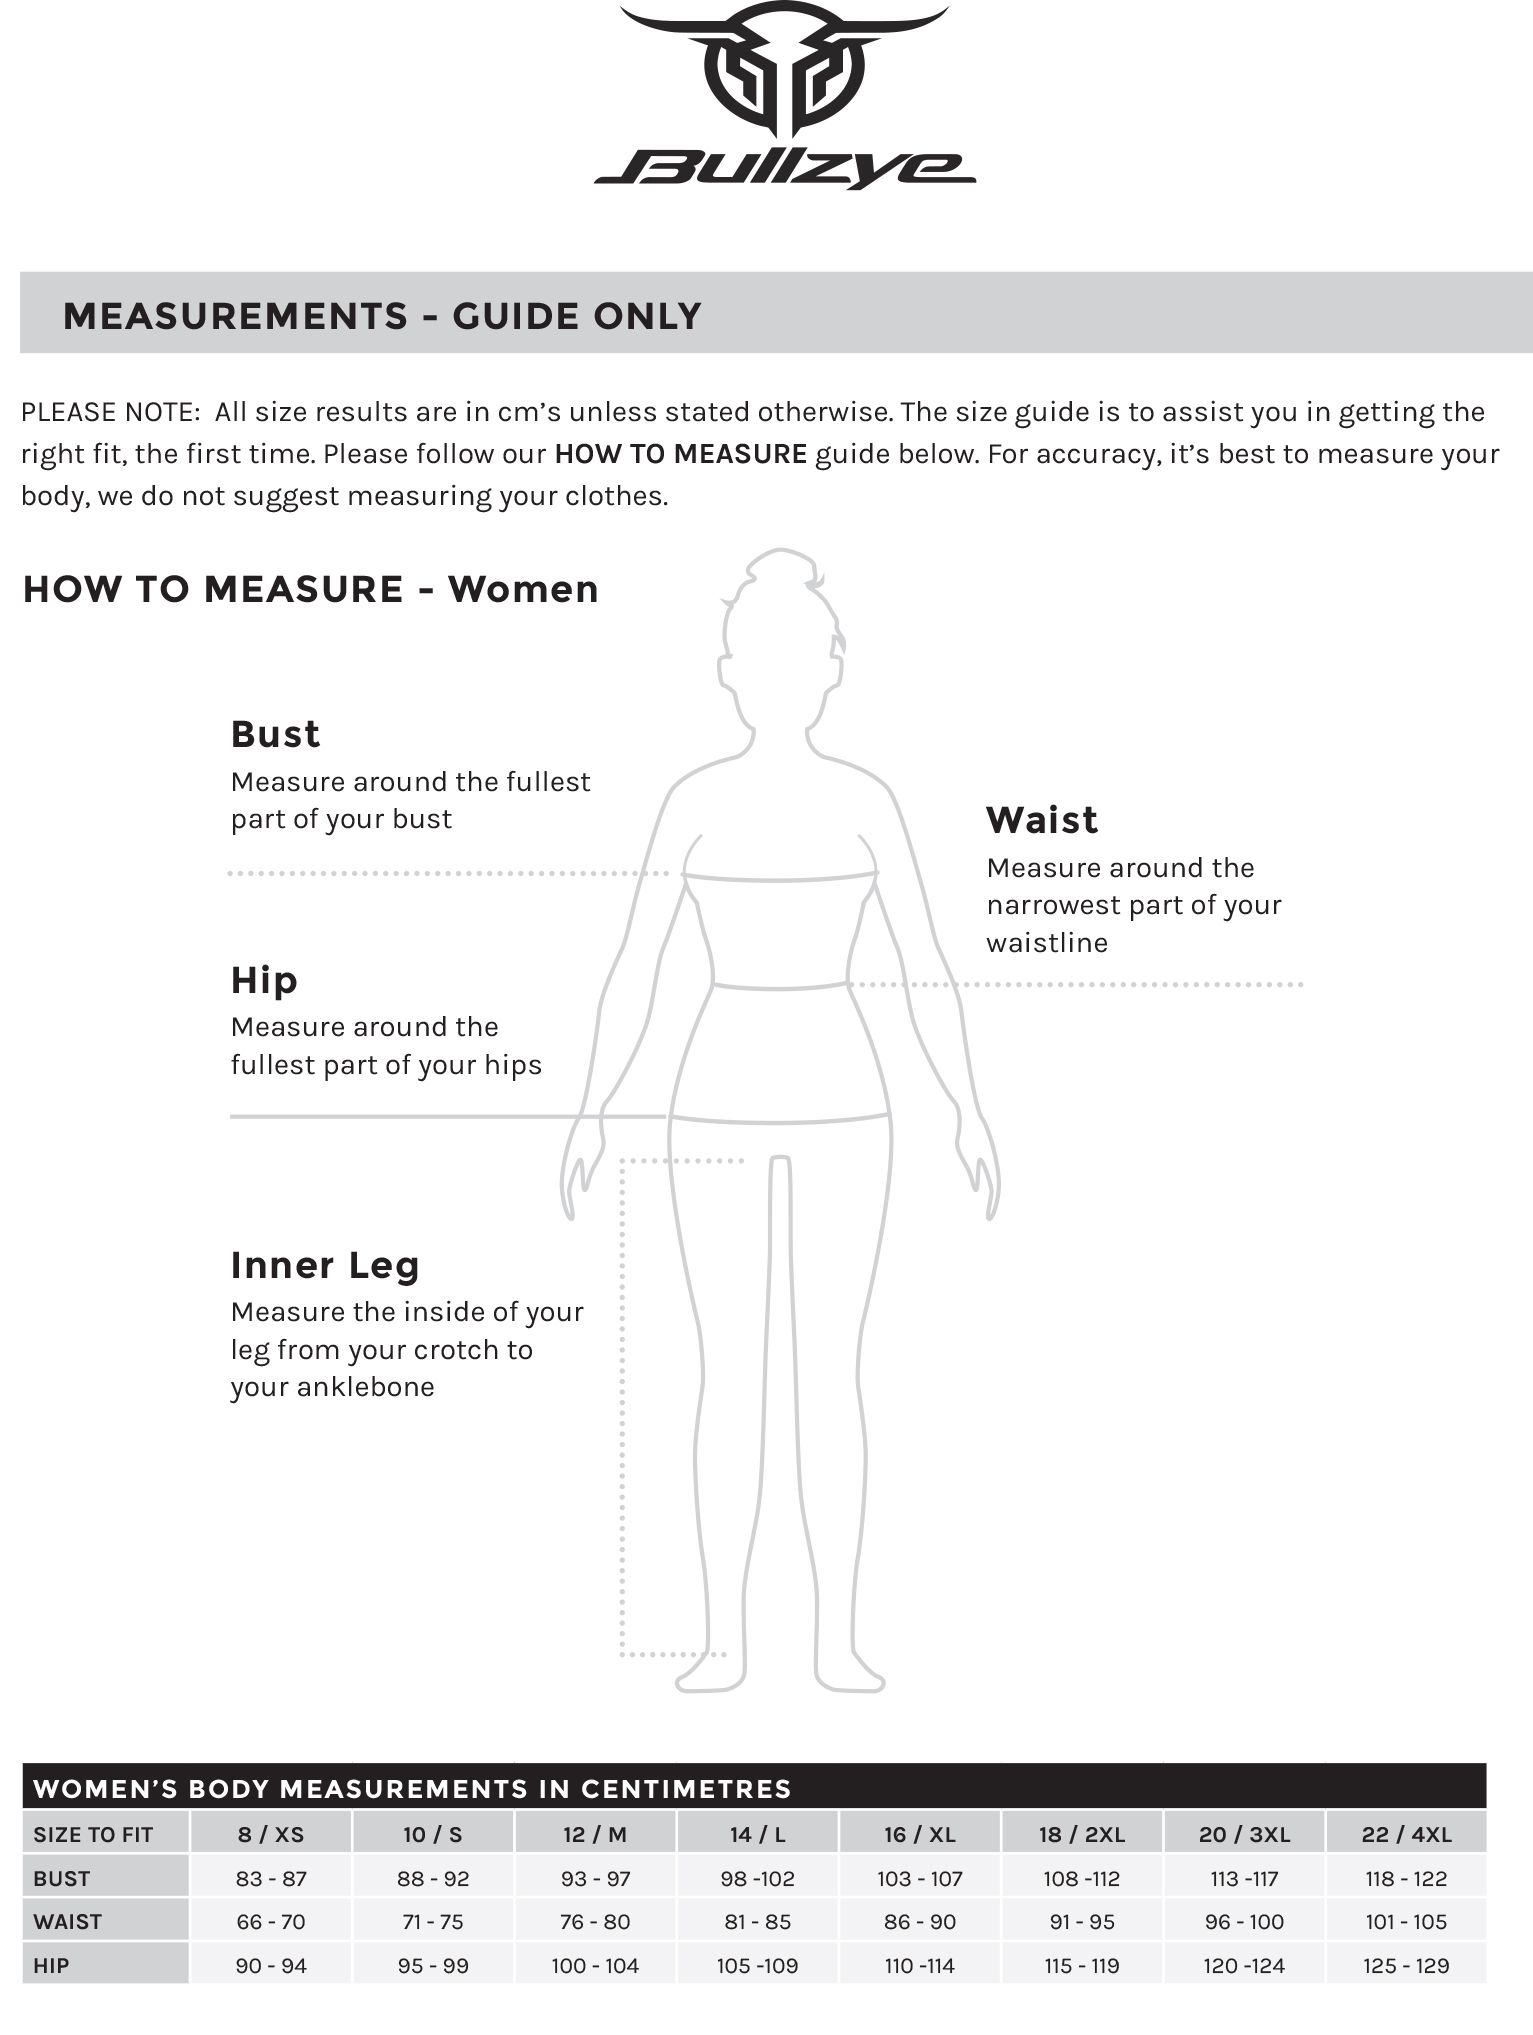 Bullzye Women's Size Guide.jpg